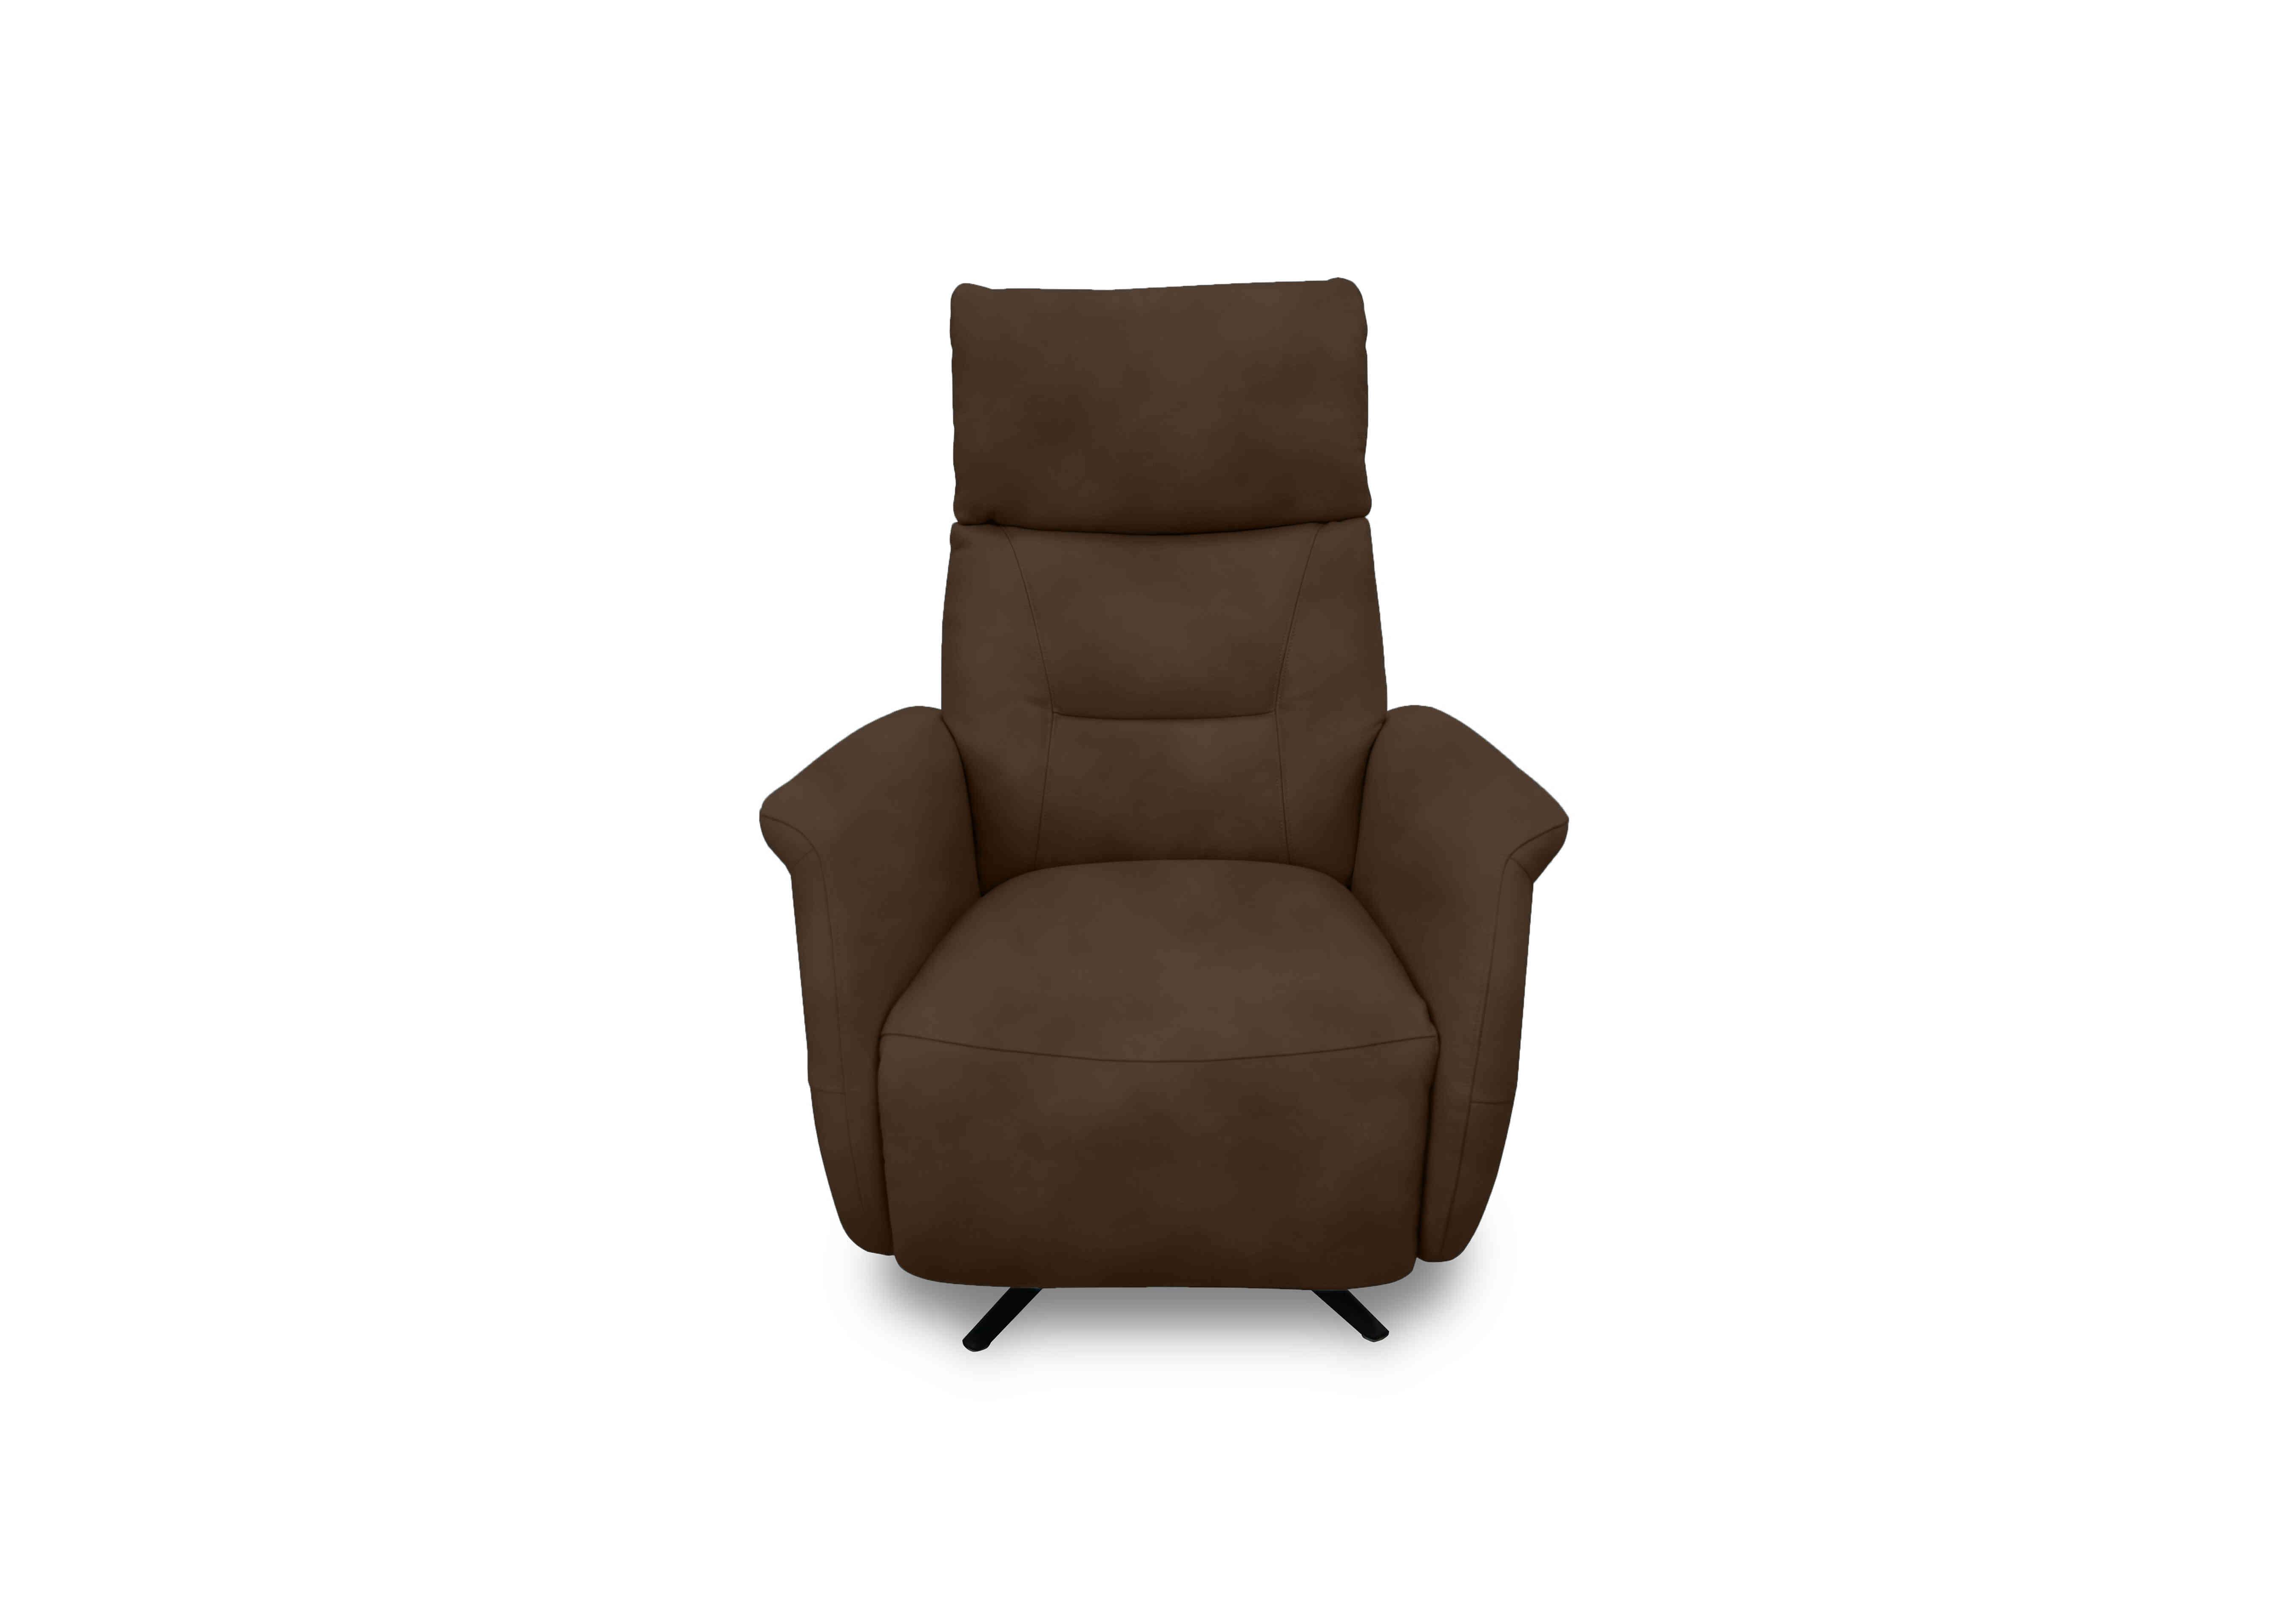 Designer Chair Collection Dusseldorf Fabric Power Recliner Swivel Chair in Sfa-Pey-R04 Dark Chocolate on Furniture Village